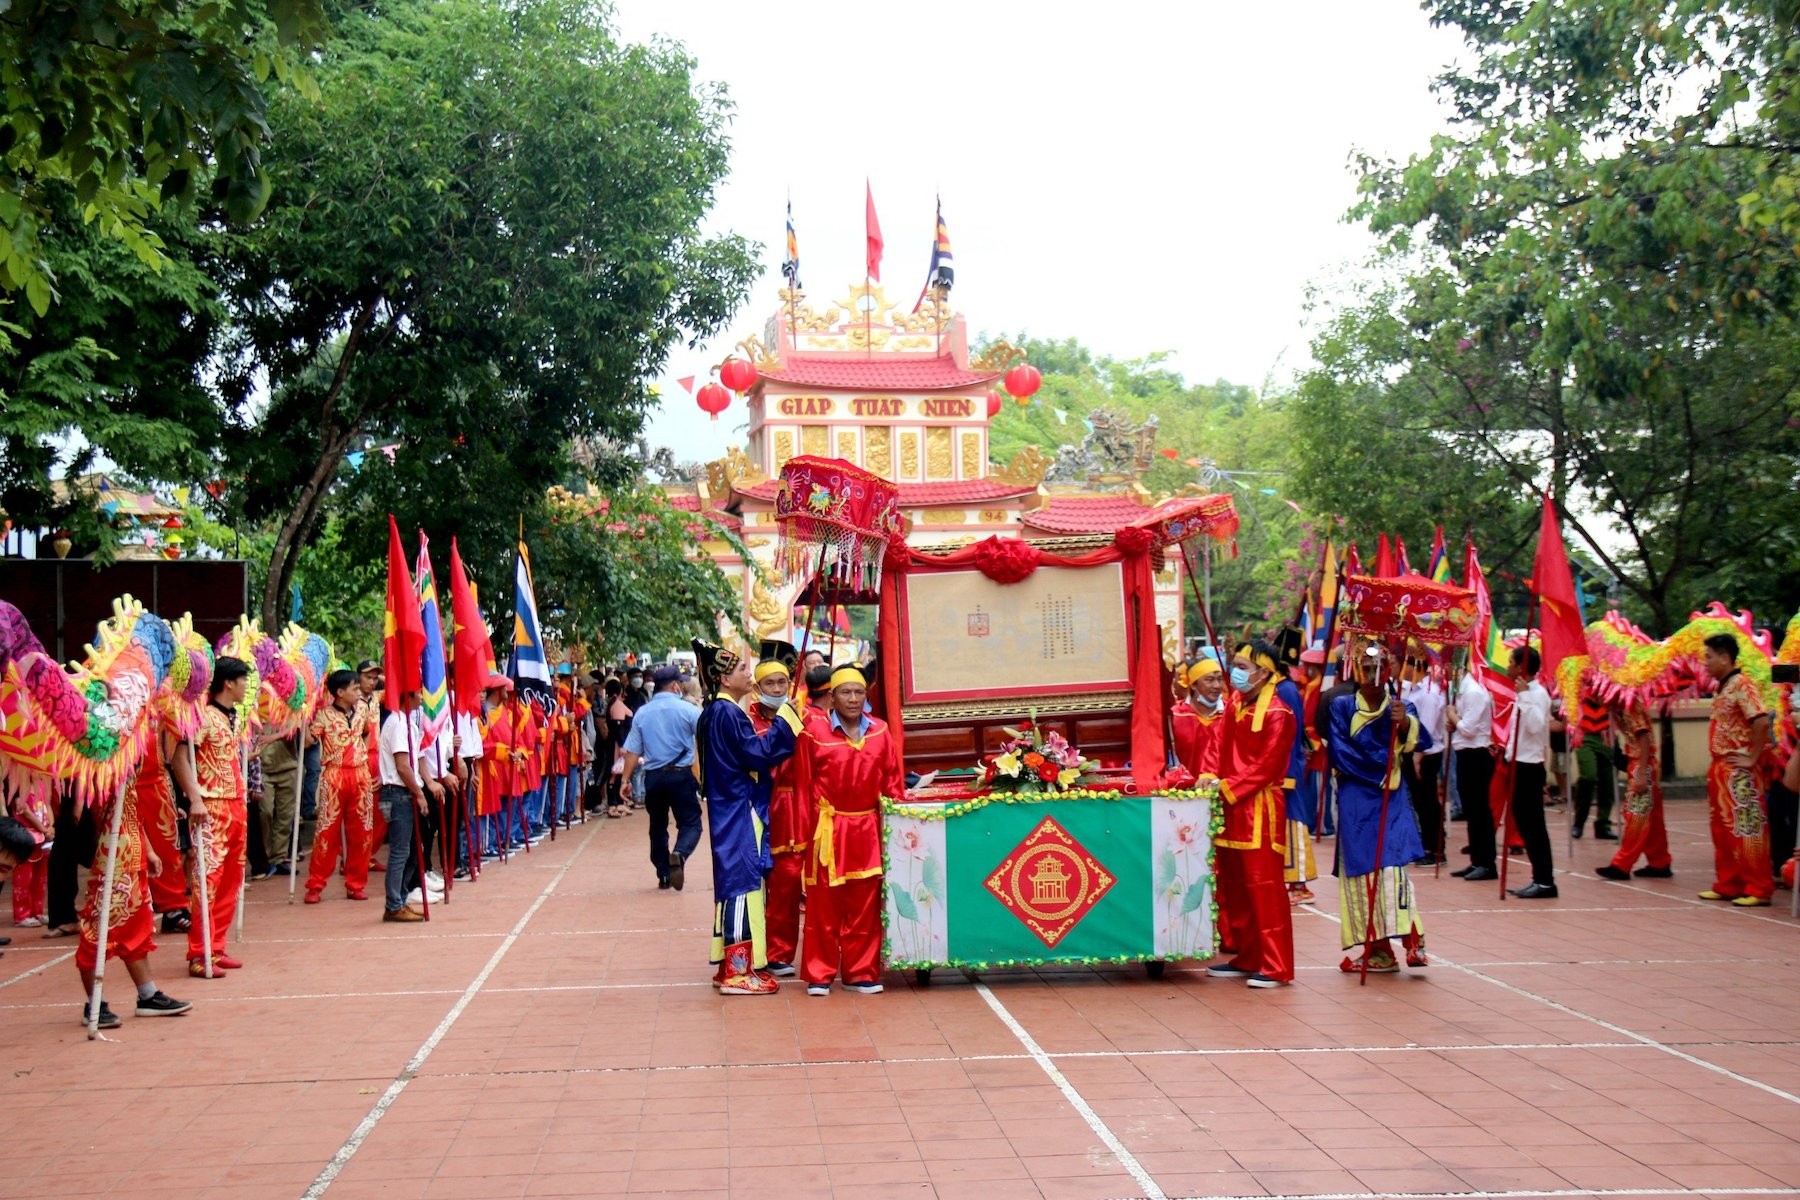 Văn hoá - Độc đáo lễ hội Dinh Thầy Thím ở Bình Thuận (Hình 4).